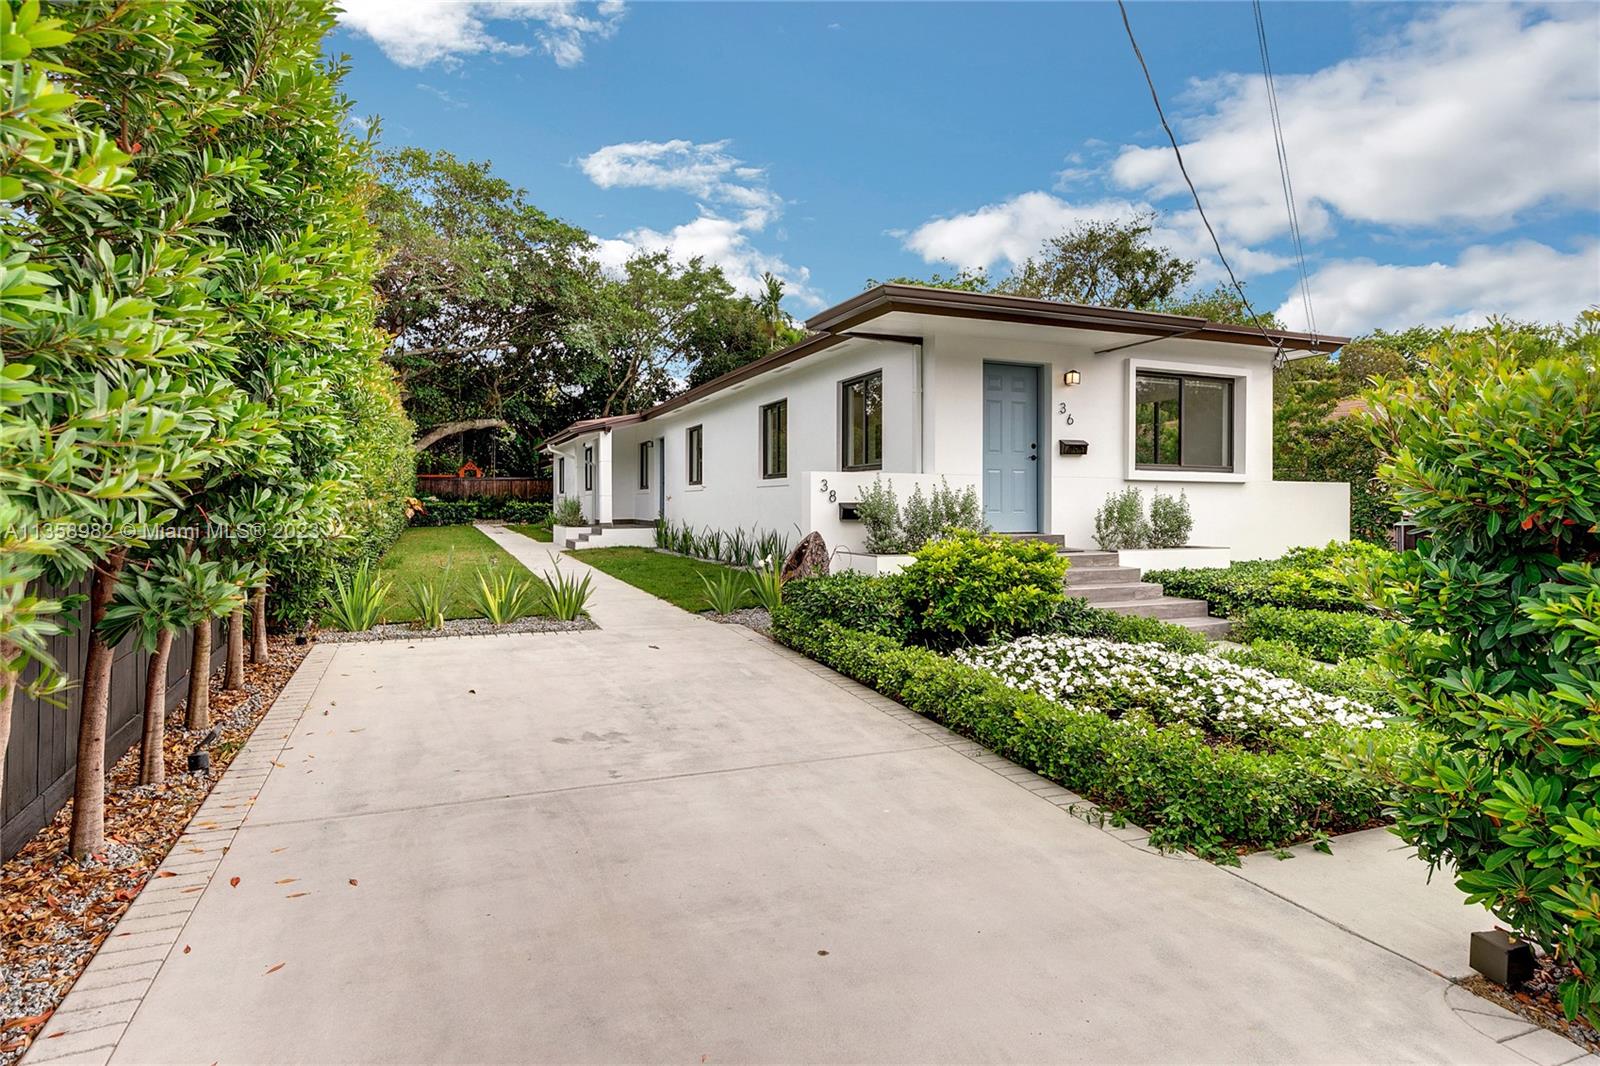 Rental Property at 36 Nw 52nd St, Miami, Broward County, Florida -  - $1,490,000 MO.